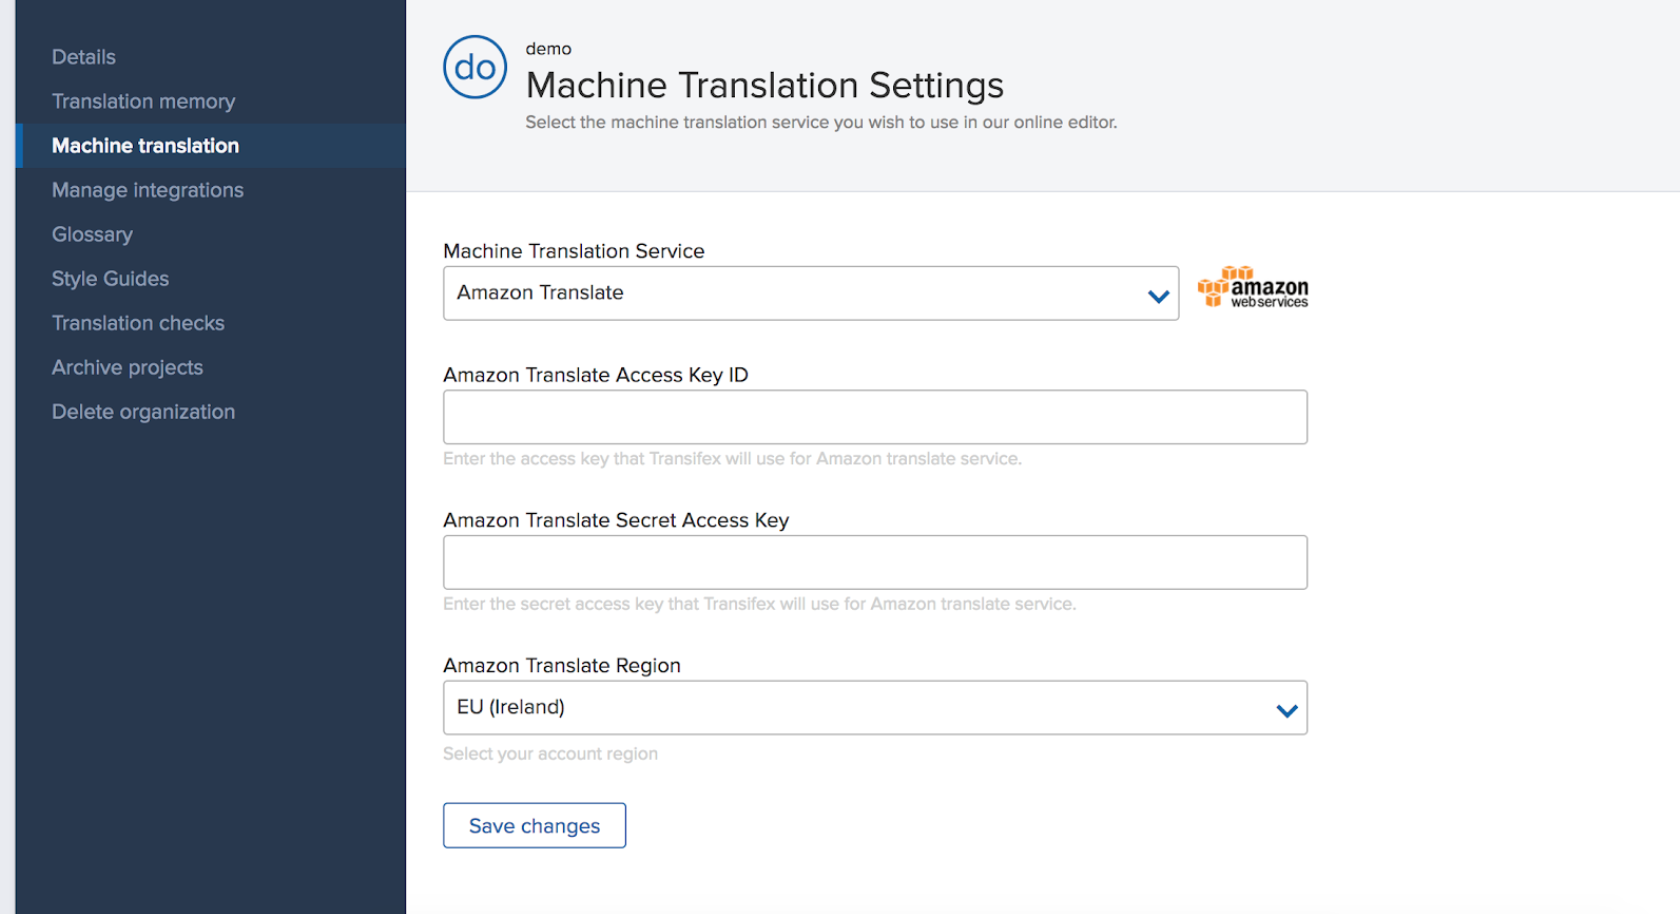 Transifex settings for machine translation - Amazon Translate